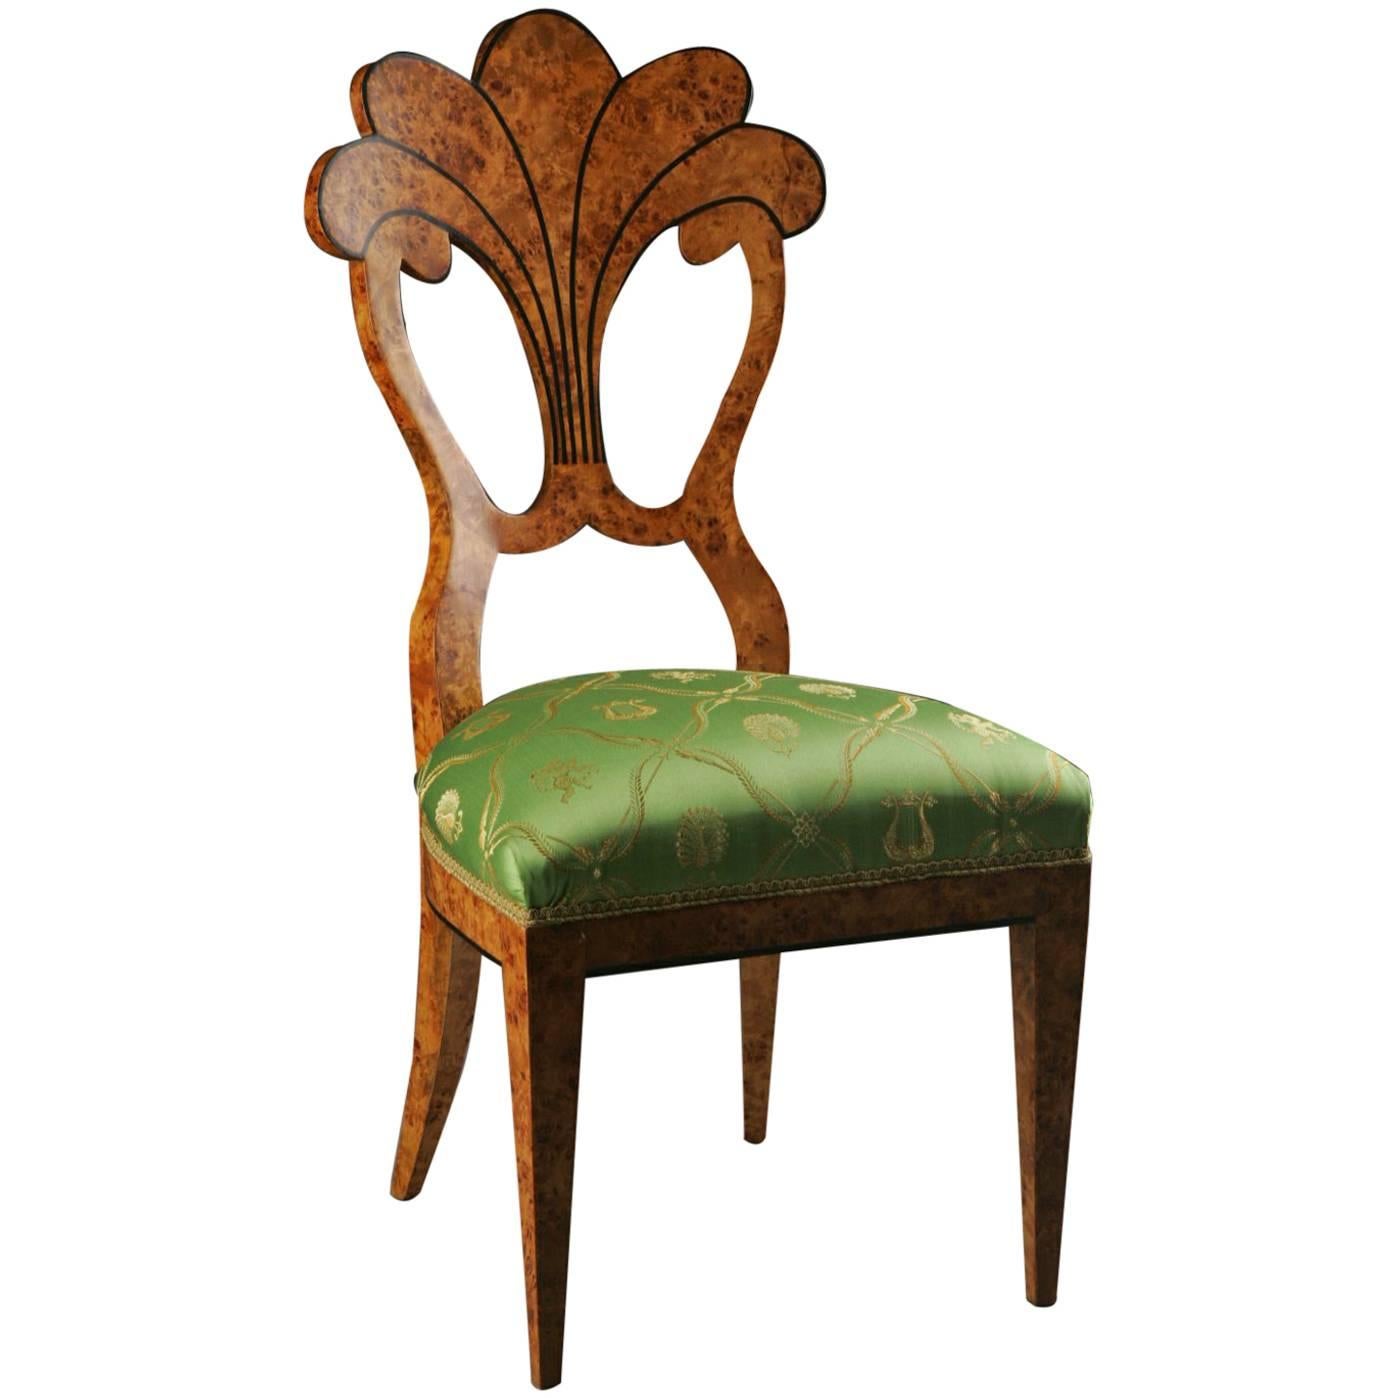 20th Century Vienna Biedermeier Style Fan-Formed Chair